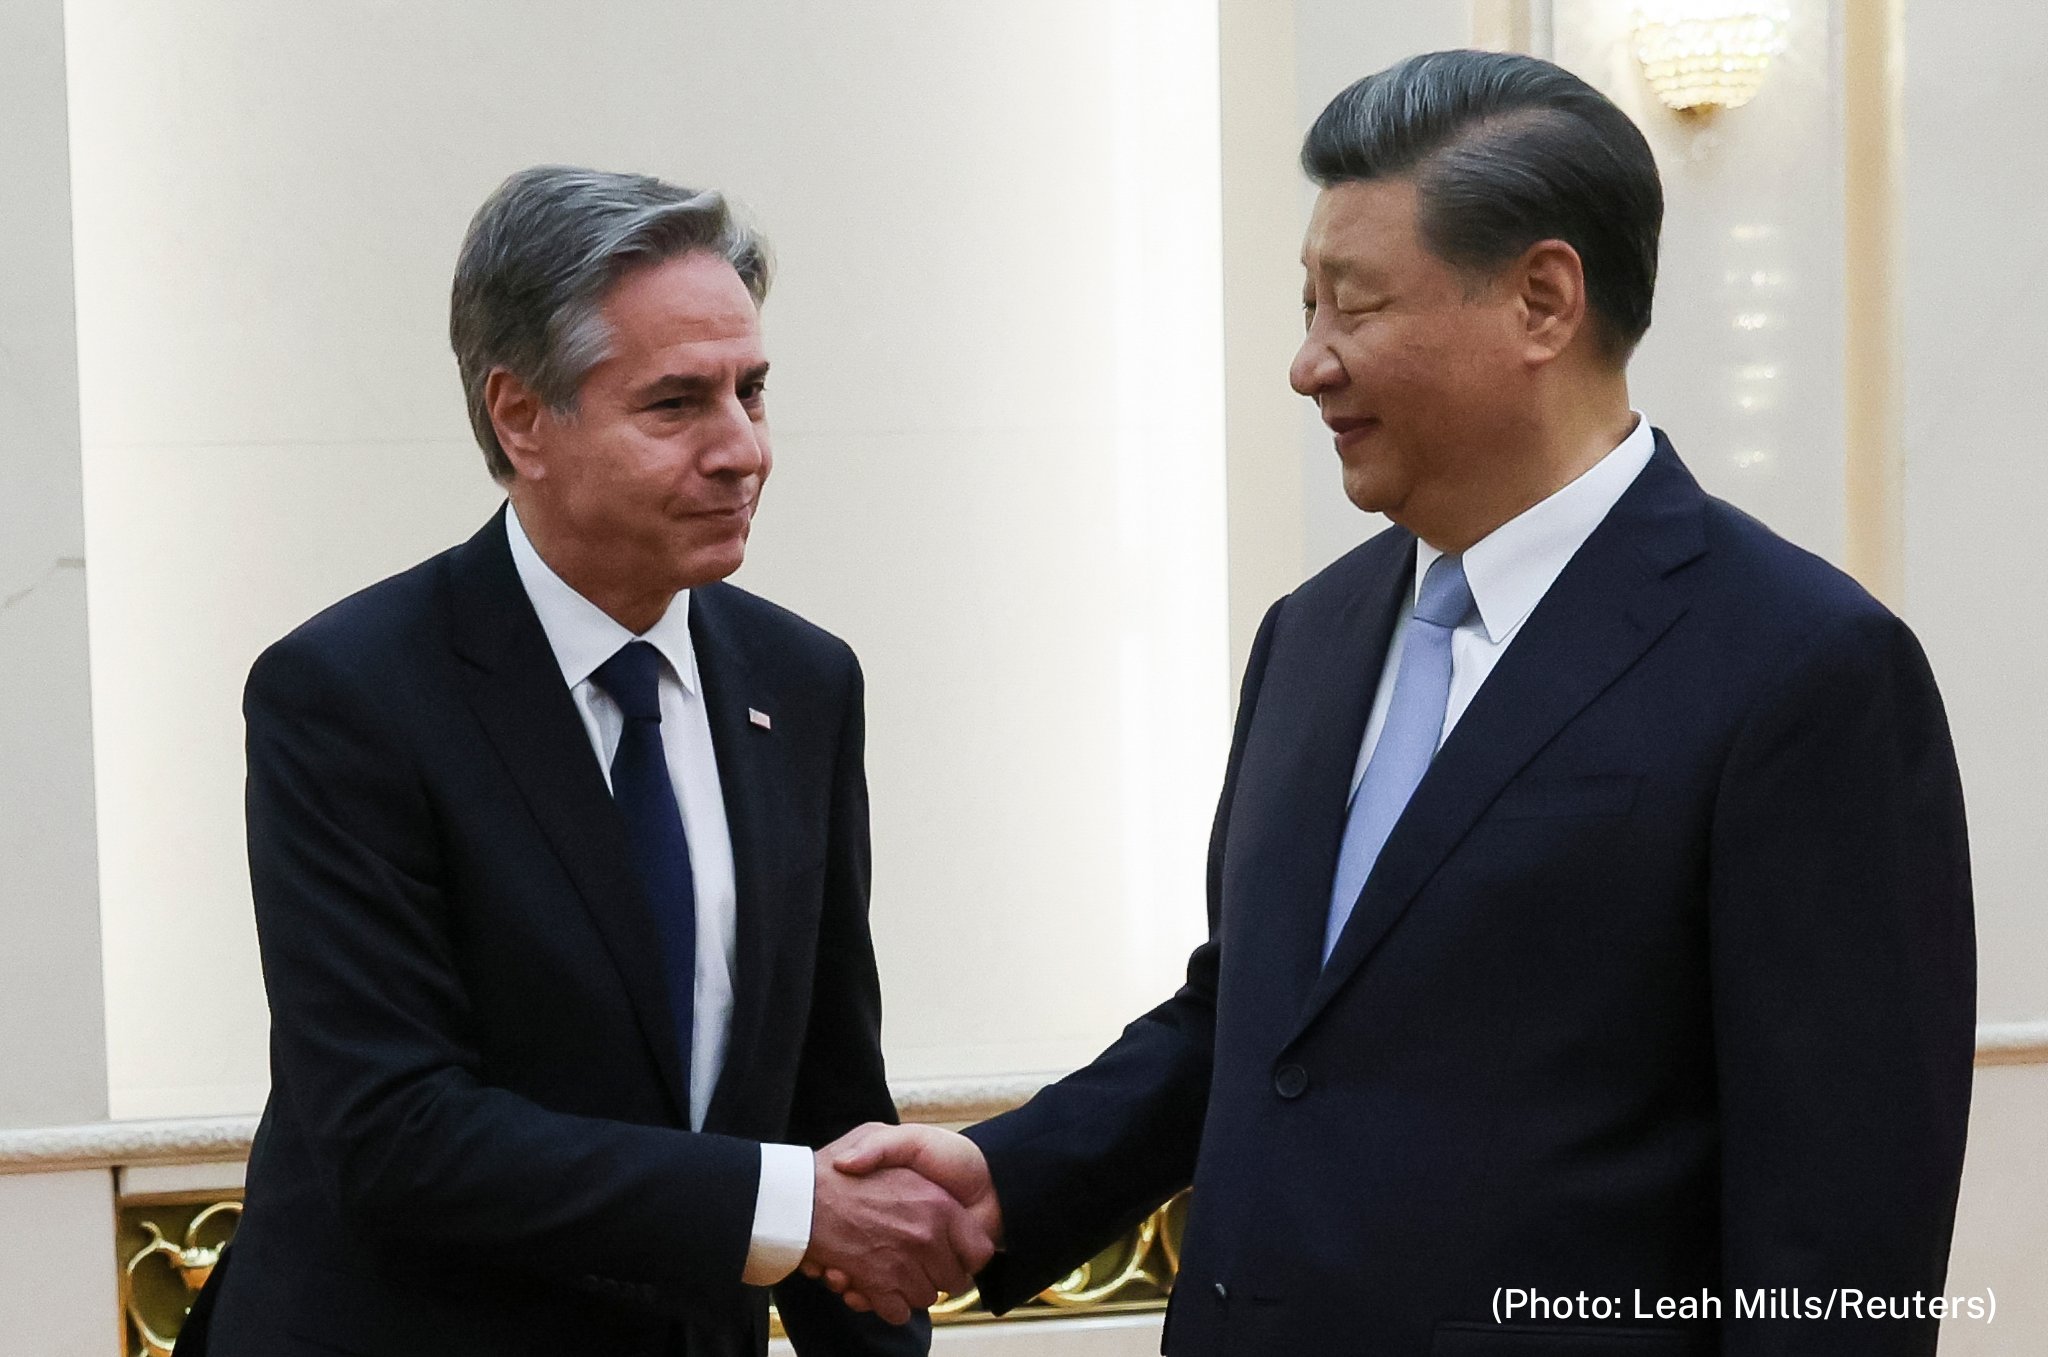 “O mnogih vprašanjih se globoko – celo odločno – ne strinjamo” – Ameriški državni sekretar Antony Blinken po obisku na Kitajskem